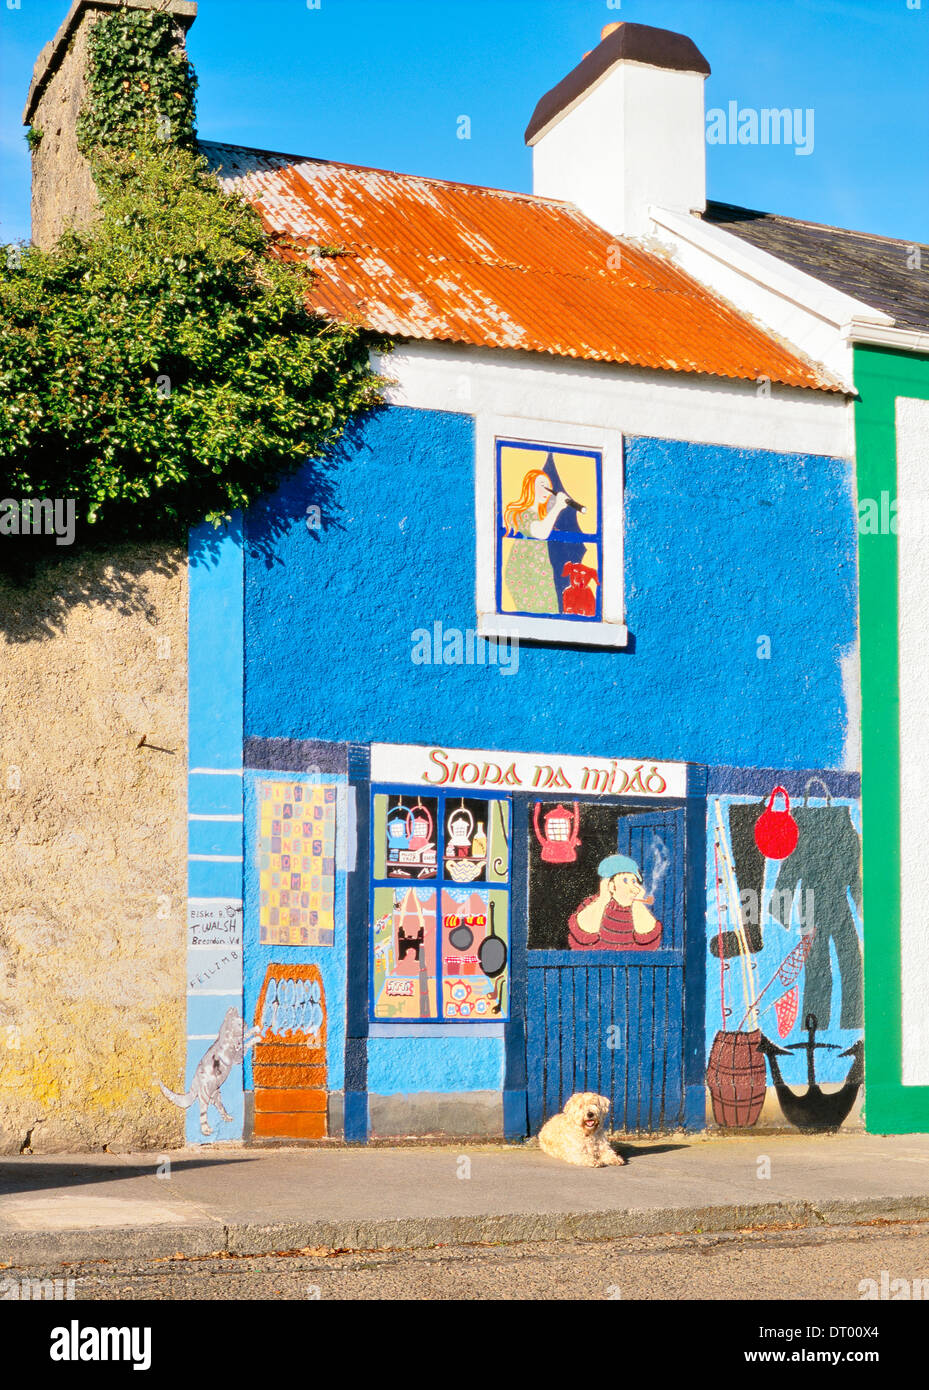 Chien devant de la peinture murale de boutique d'articles de pêche dans village de pêcheurs de Kinvara, sur la rive sud de la baie de Galway, Irlande Banque D'Images